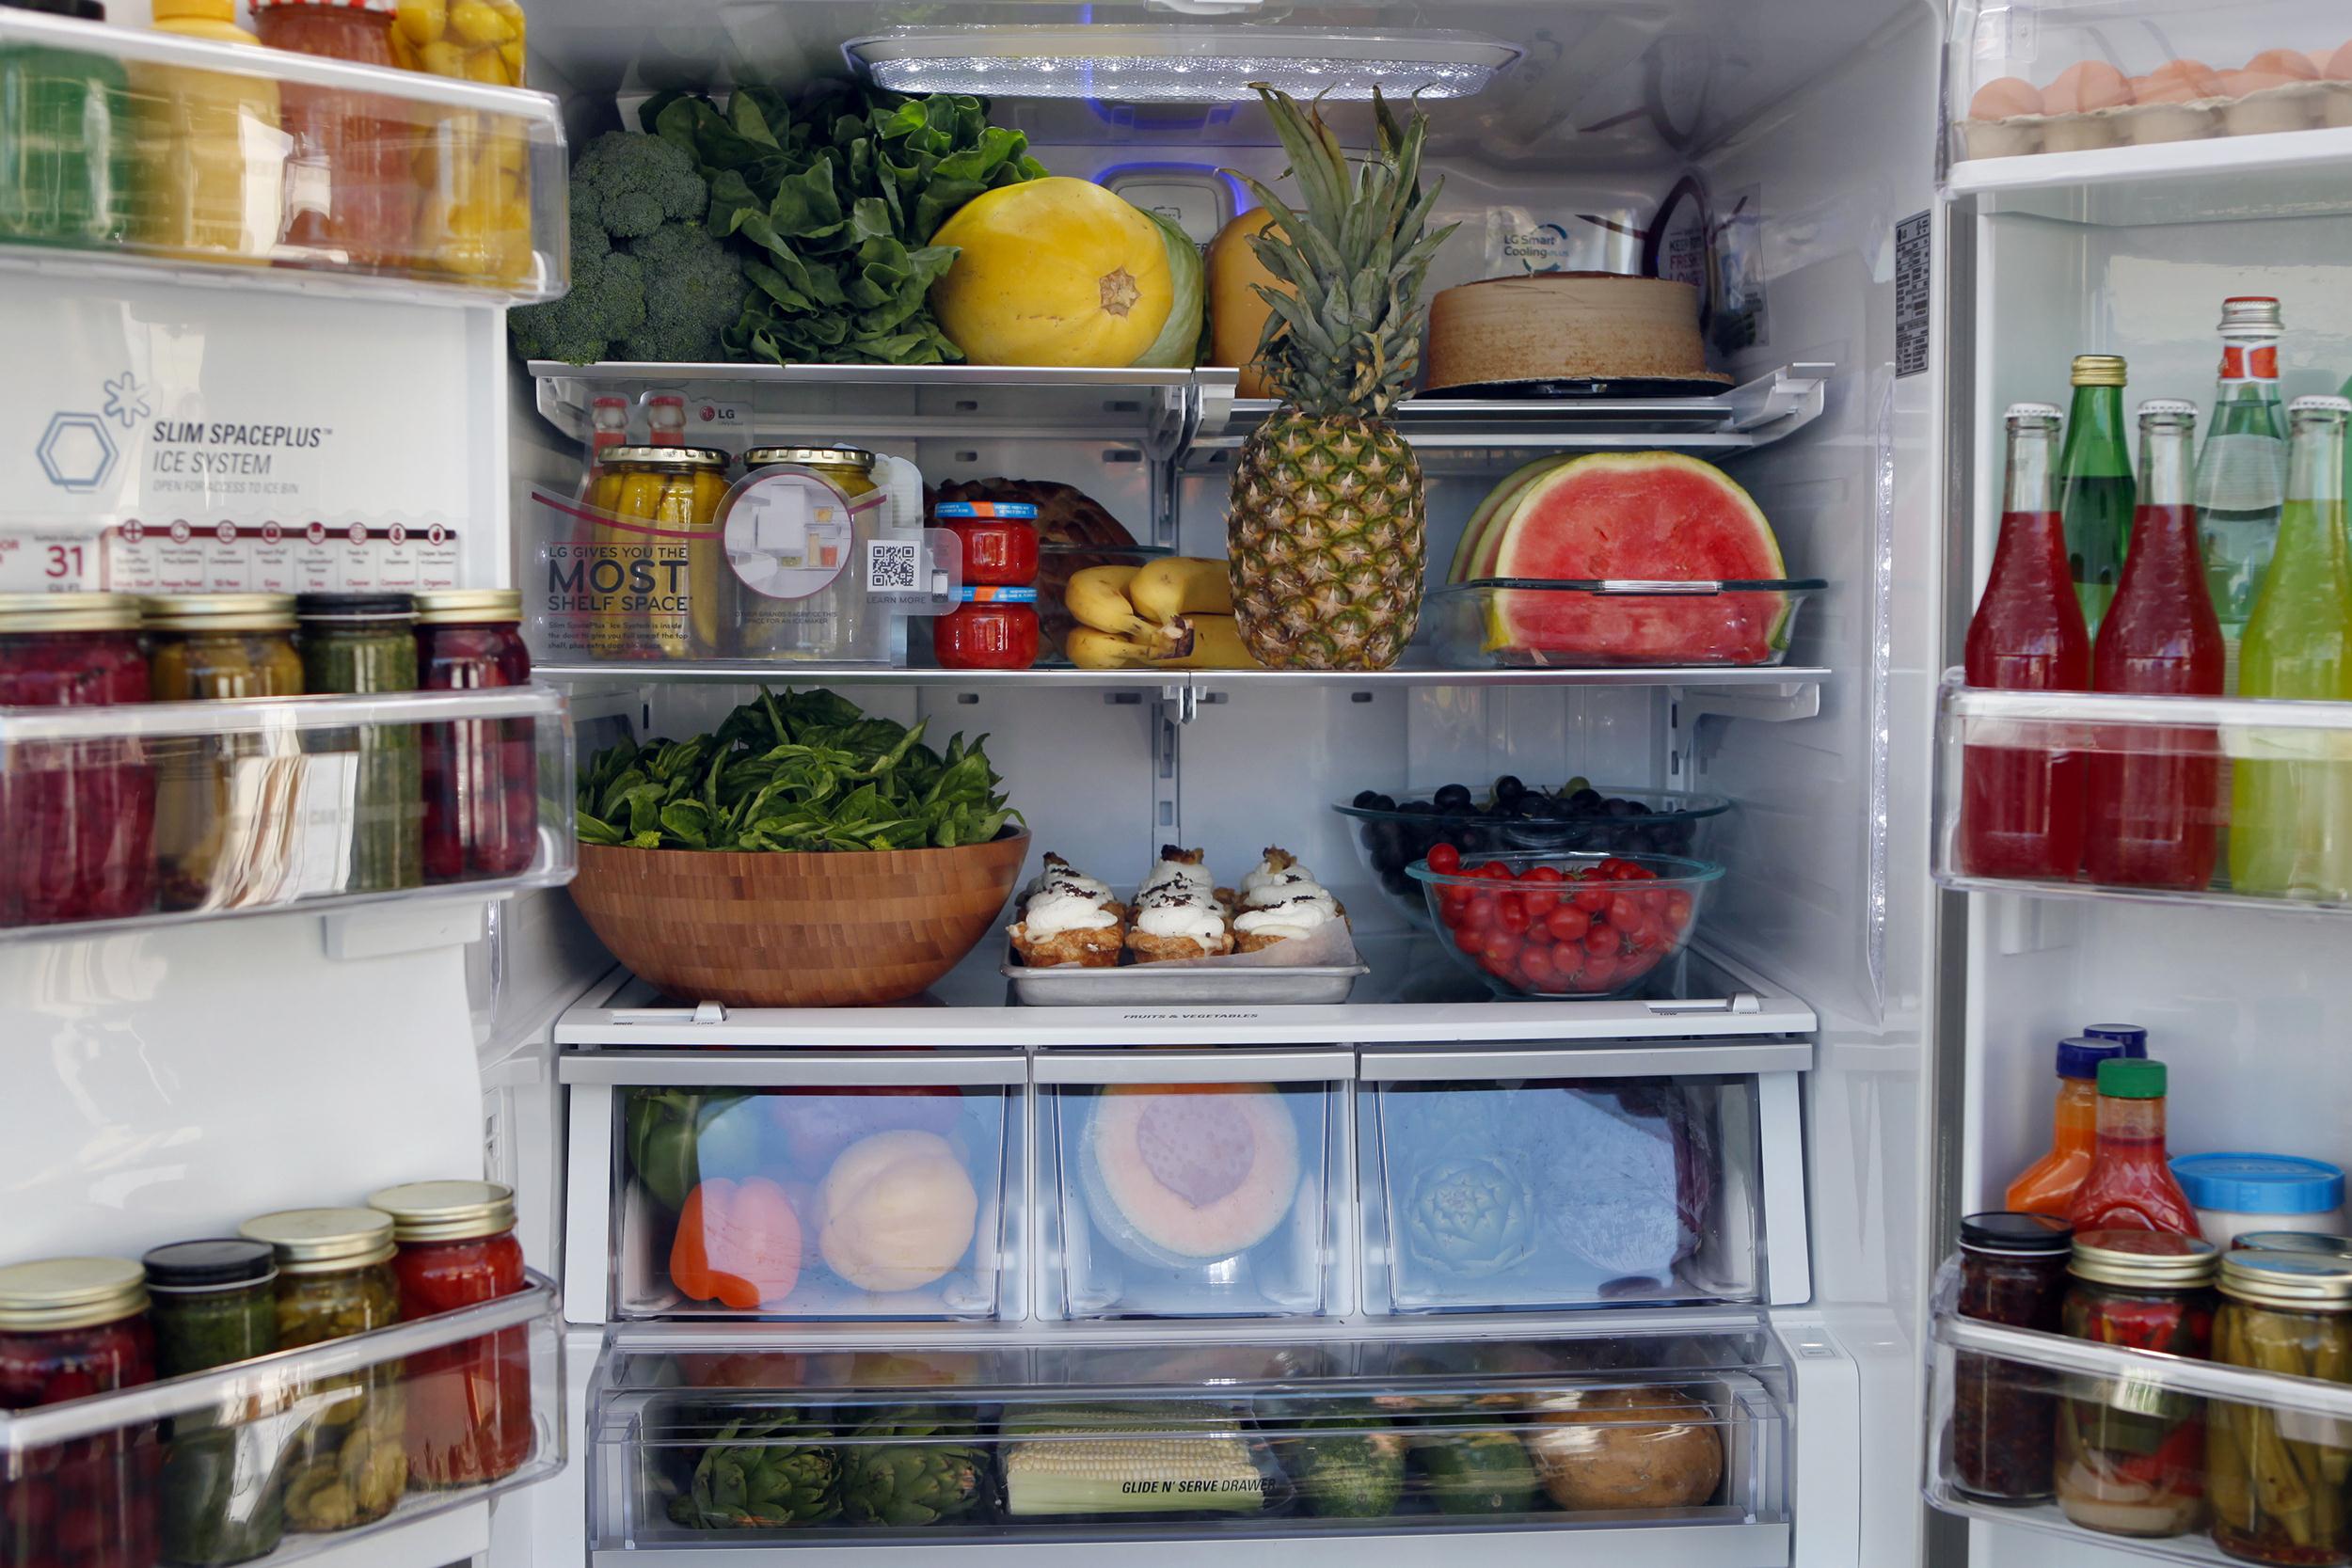 Холодильник после покупки. Холодильник с продуктами. Полный холодильник продуктов. Холодильник с едой. Холодильник набитый продуктами.